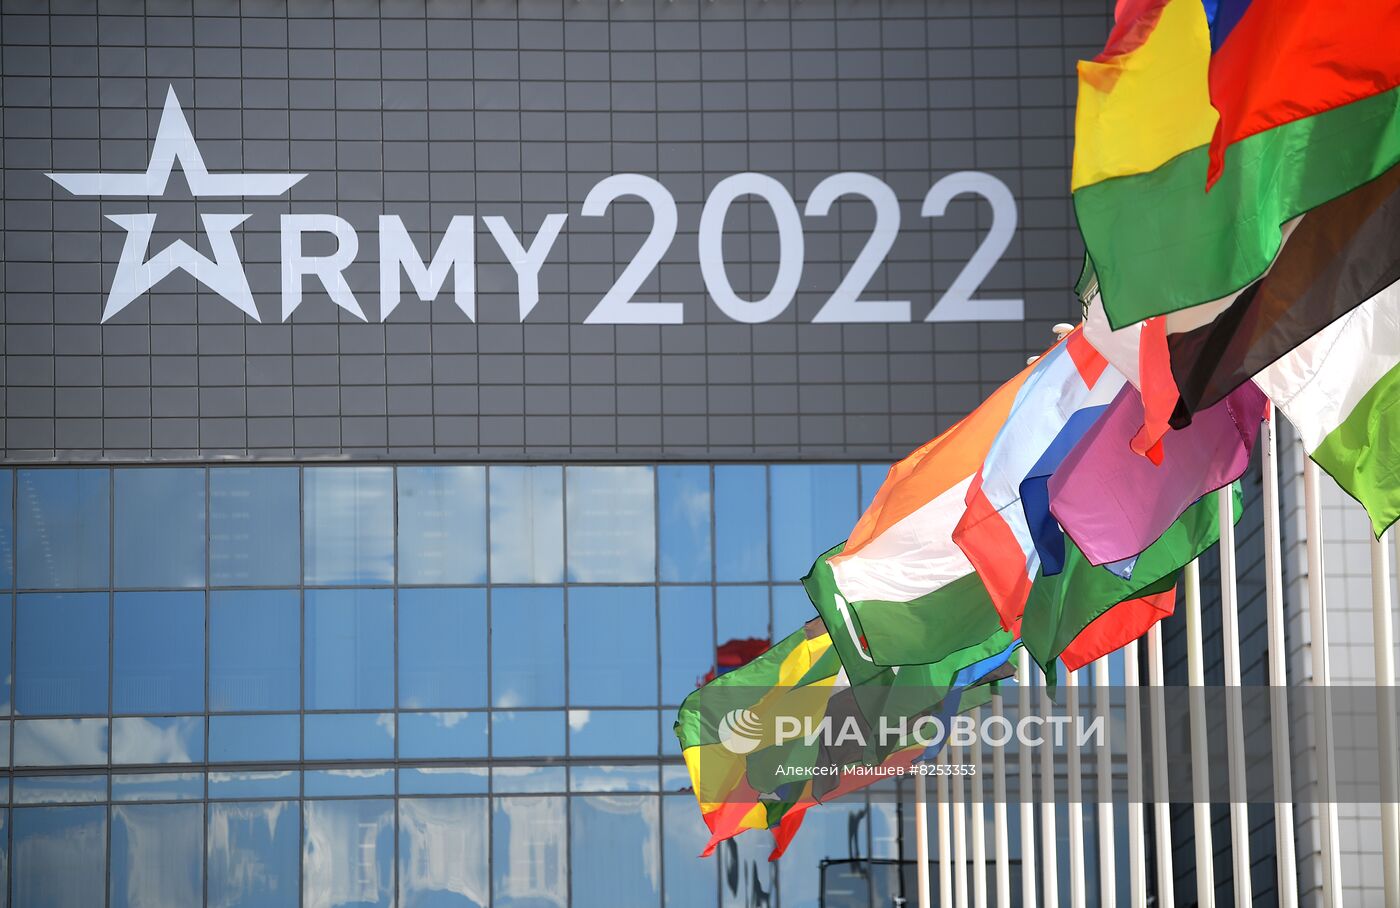 Открытие форума "Армия-2022" и армейских международных игр 